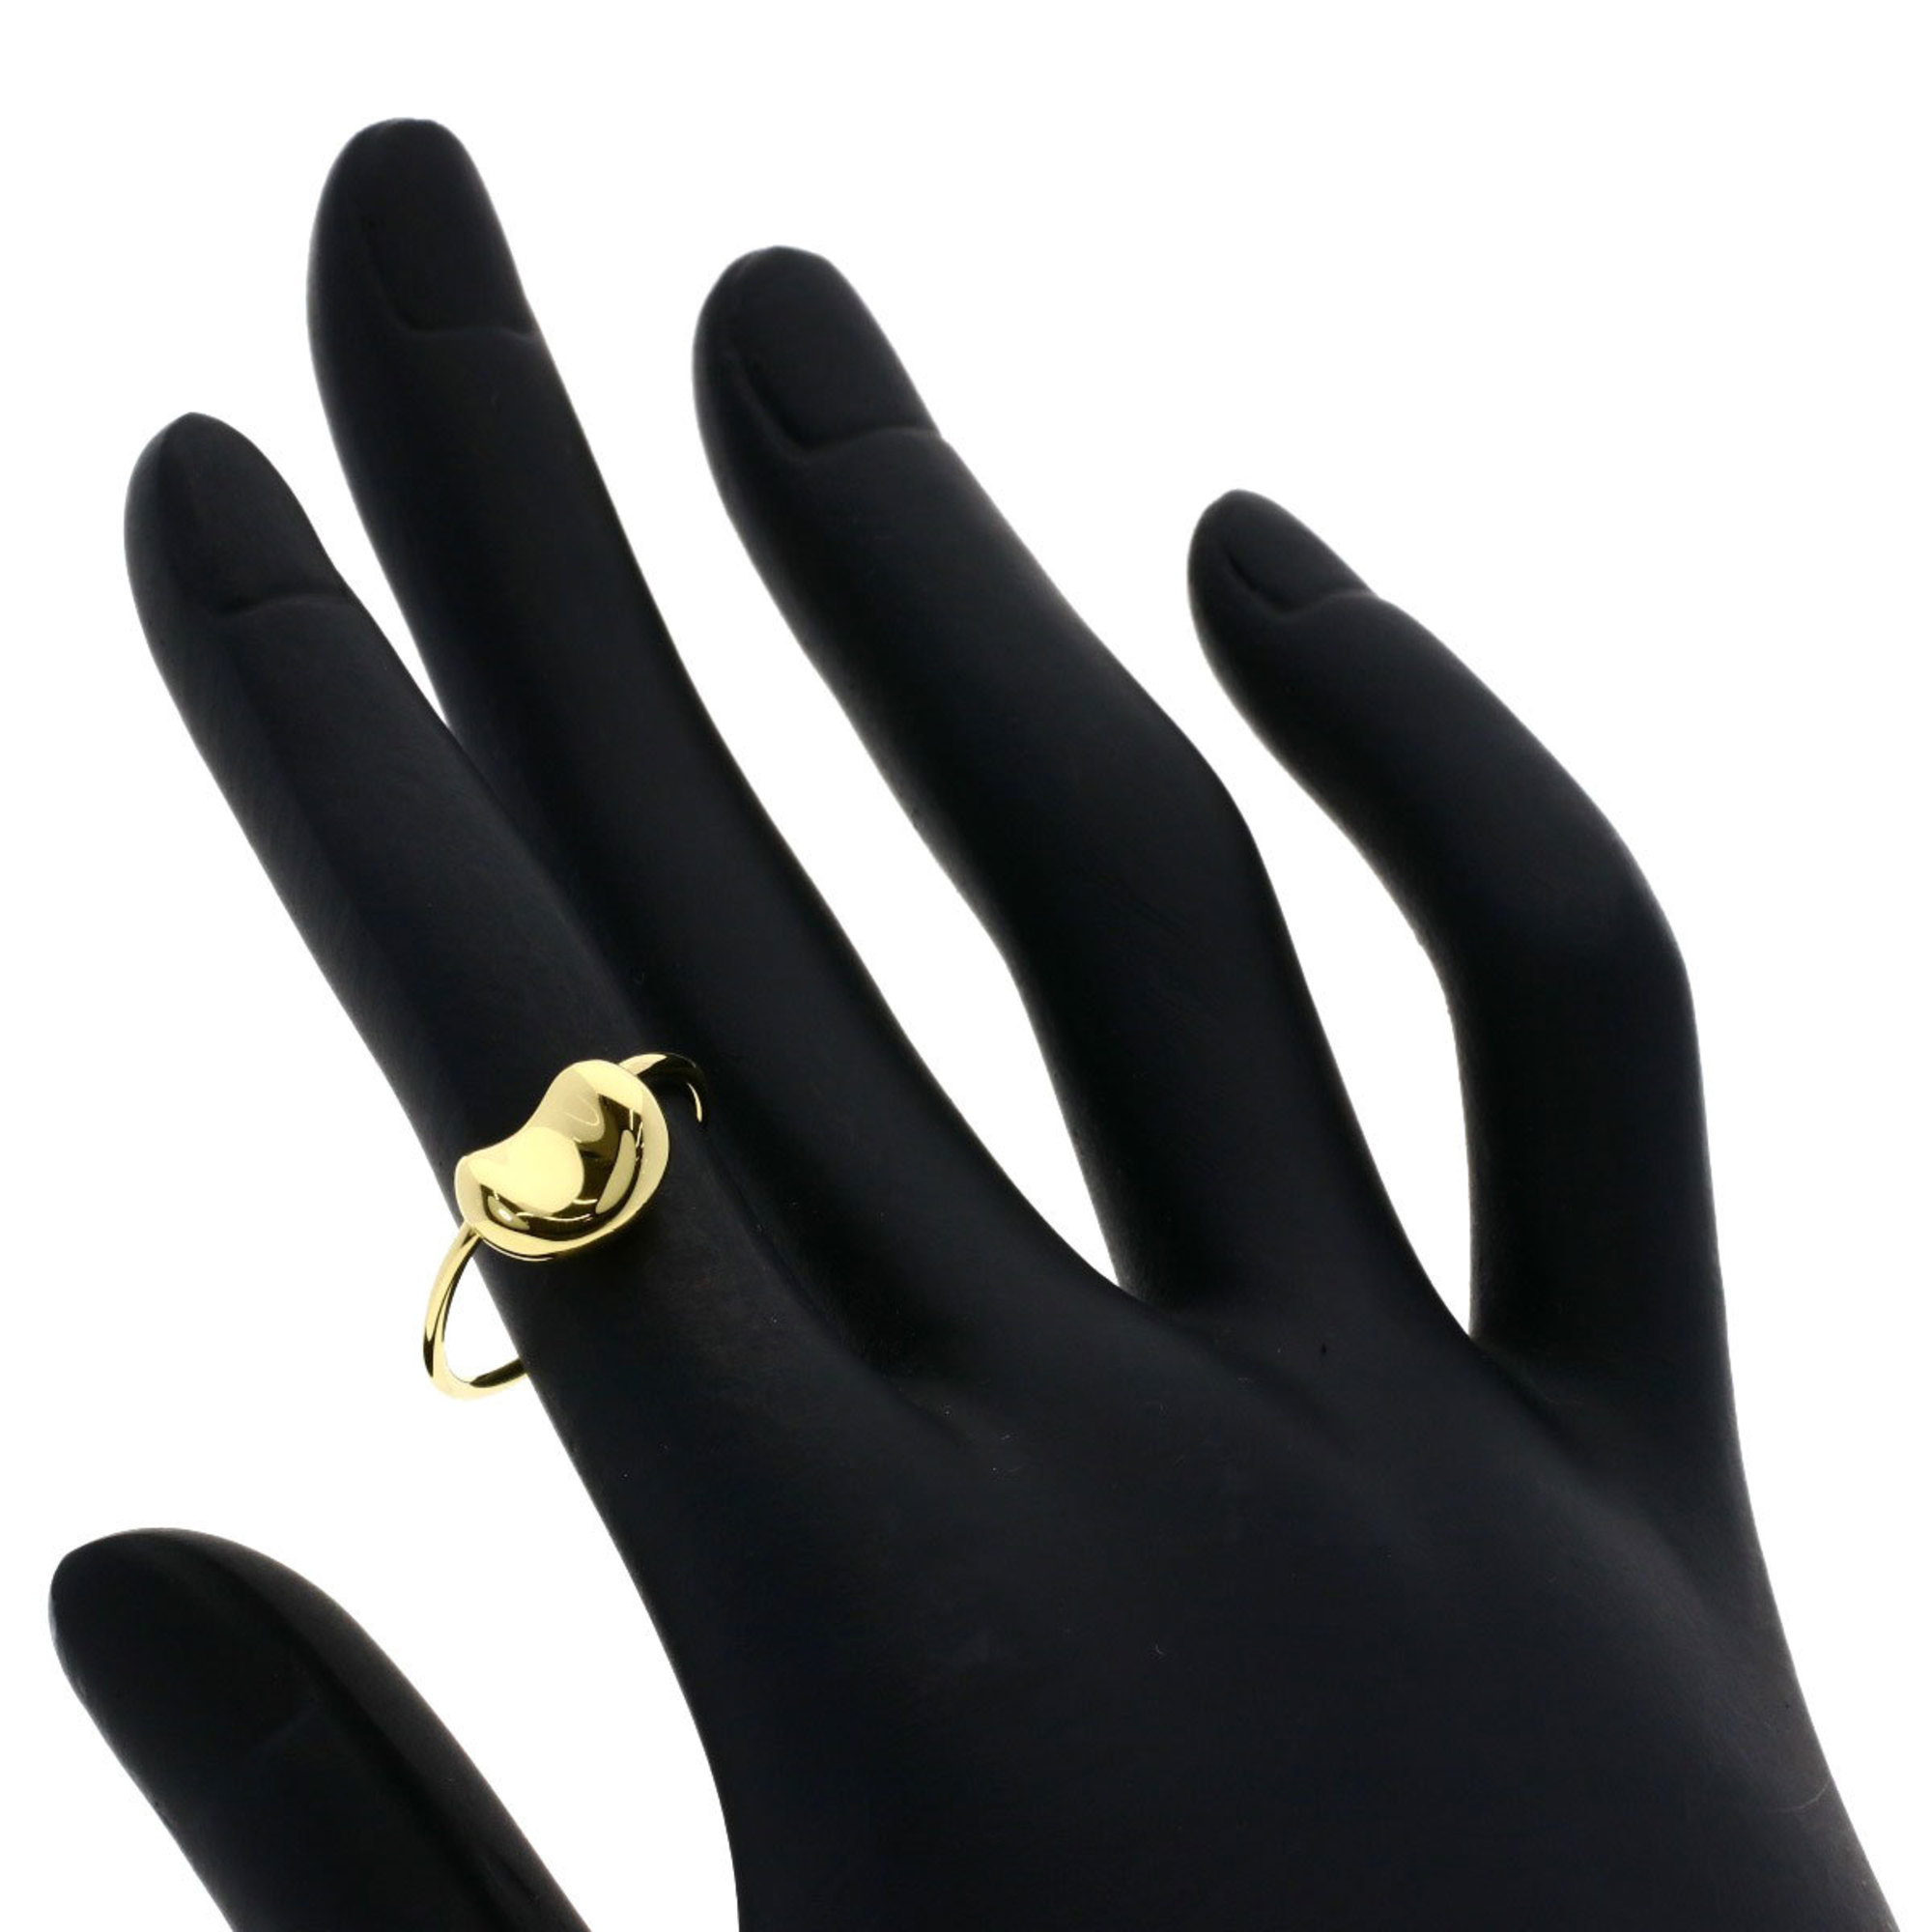 Tiffany Bean Ring, 18K Yellow Gold, Women's, TIFFANY&Co.